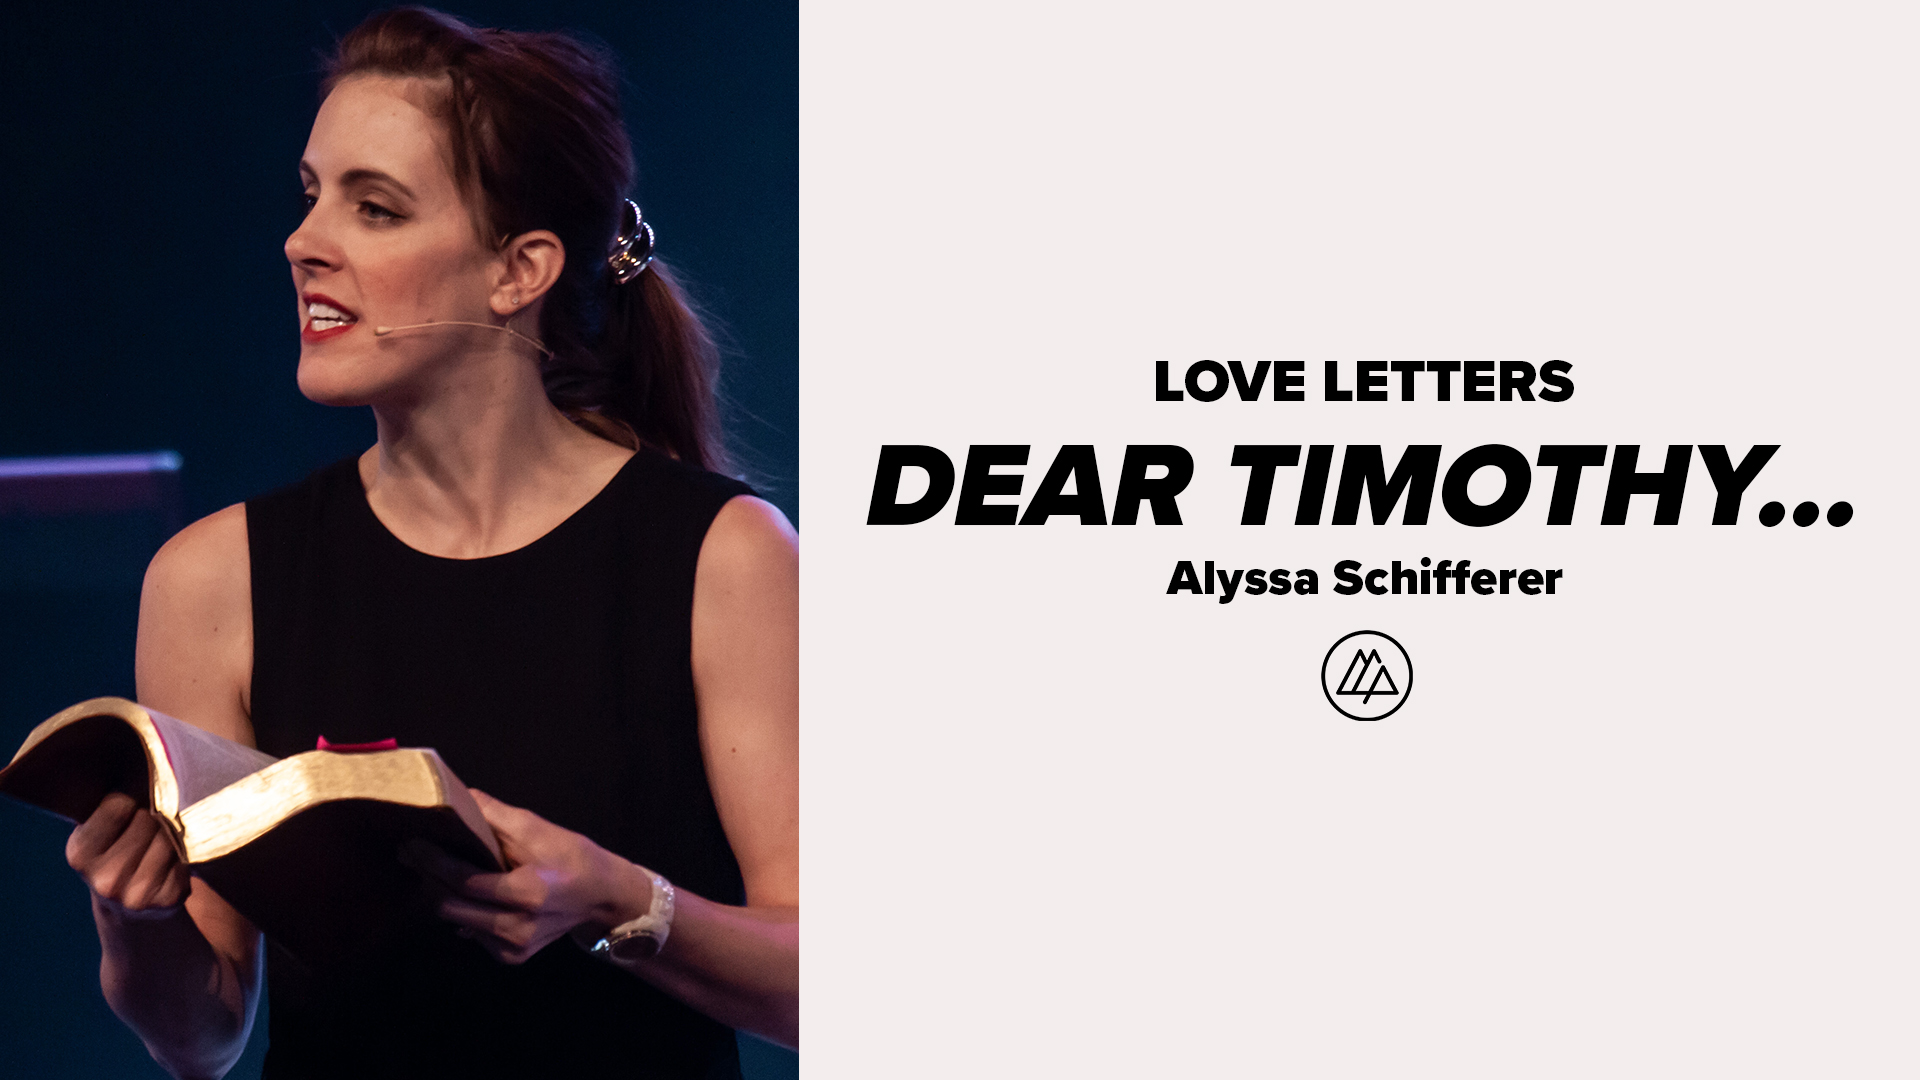 Dear Timothy...